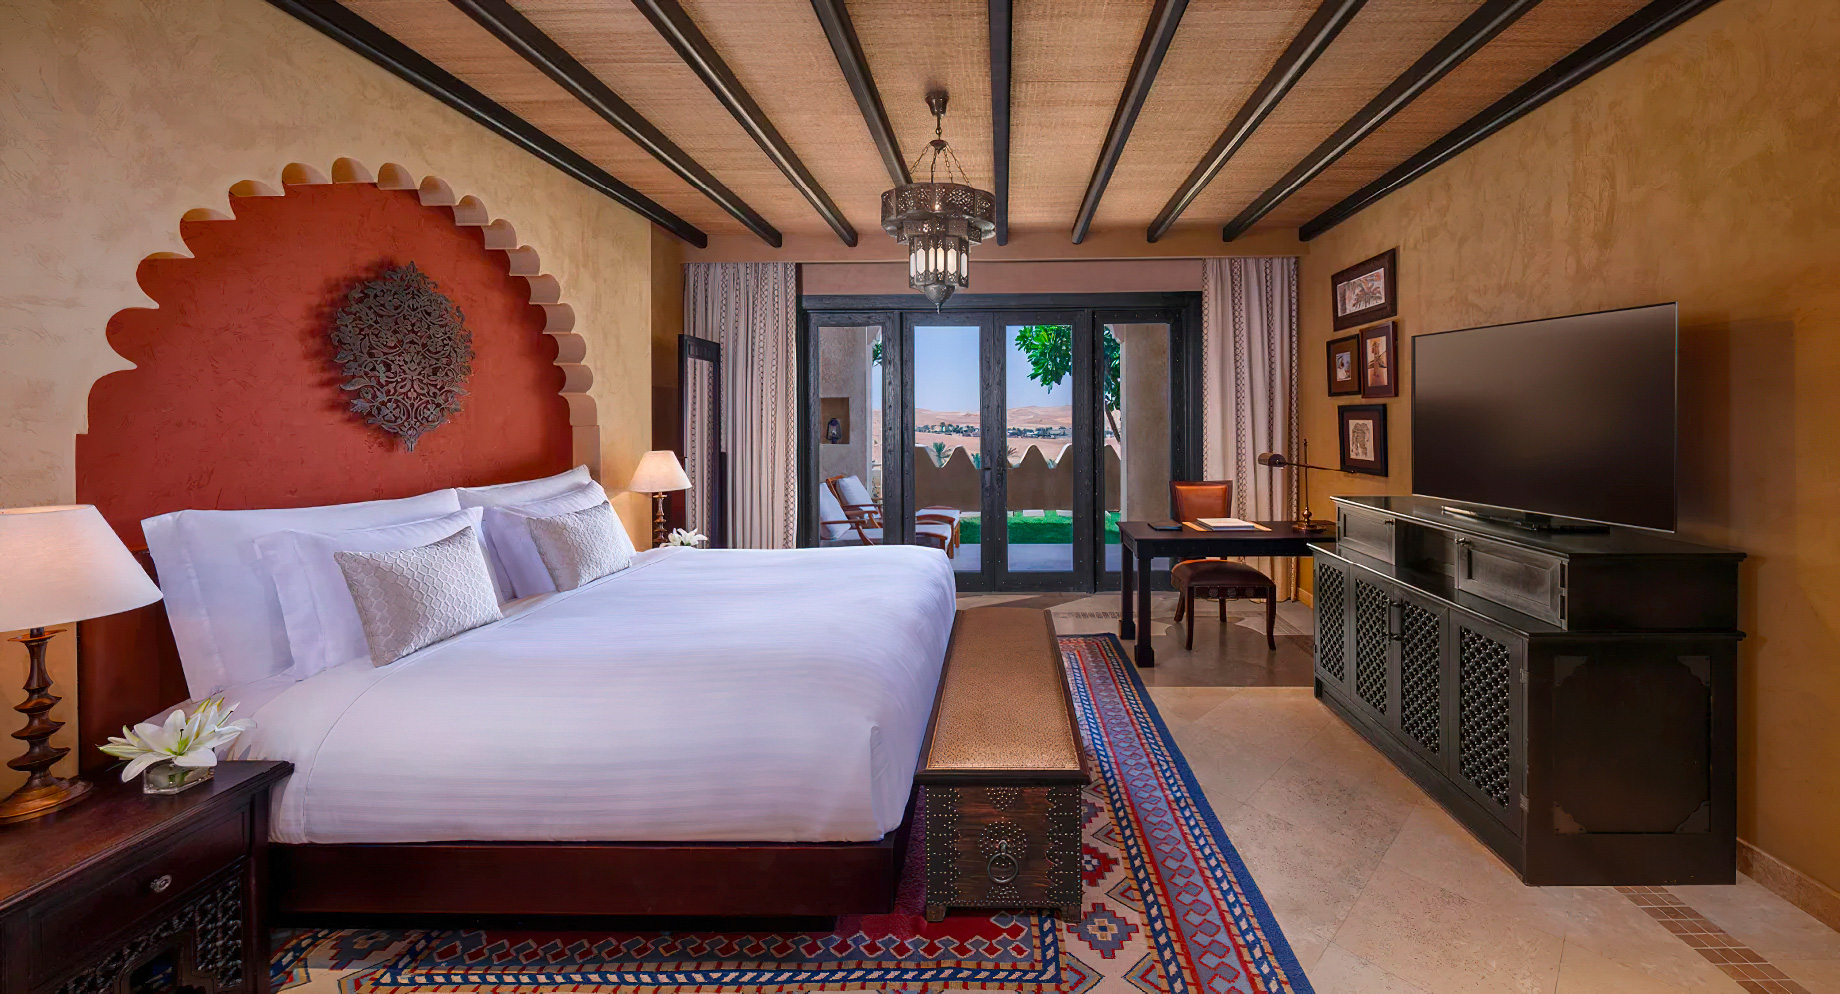 Qasr Al Sarab Desert Resort by Anantara – Abu Dhabi – United Arab Emirates – Anantara Suite